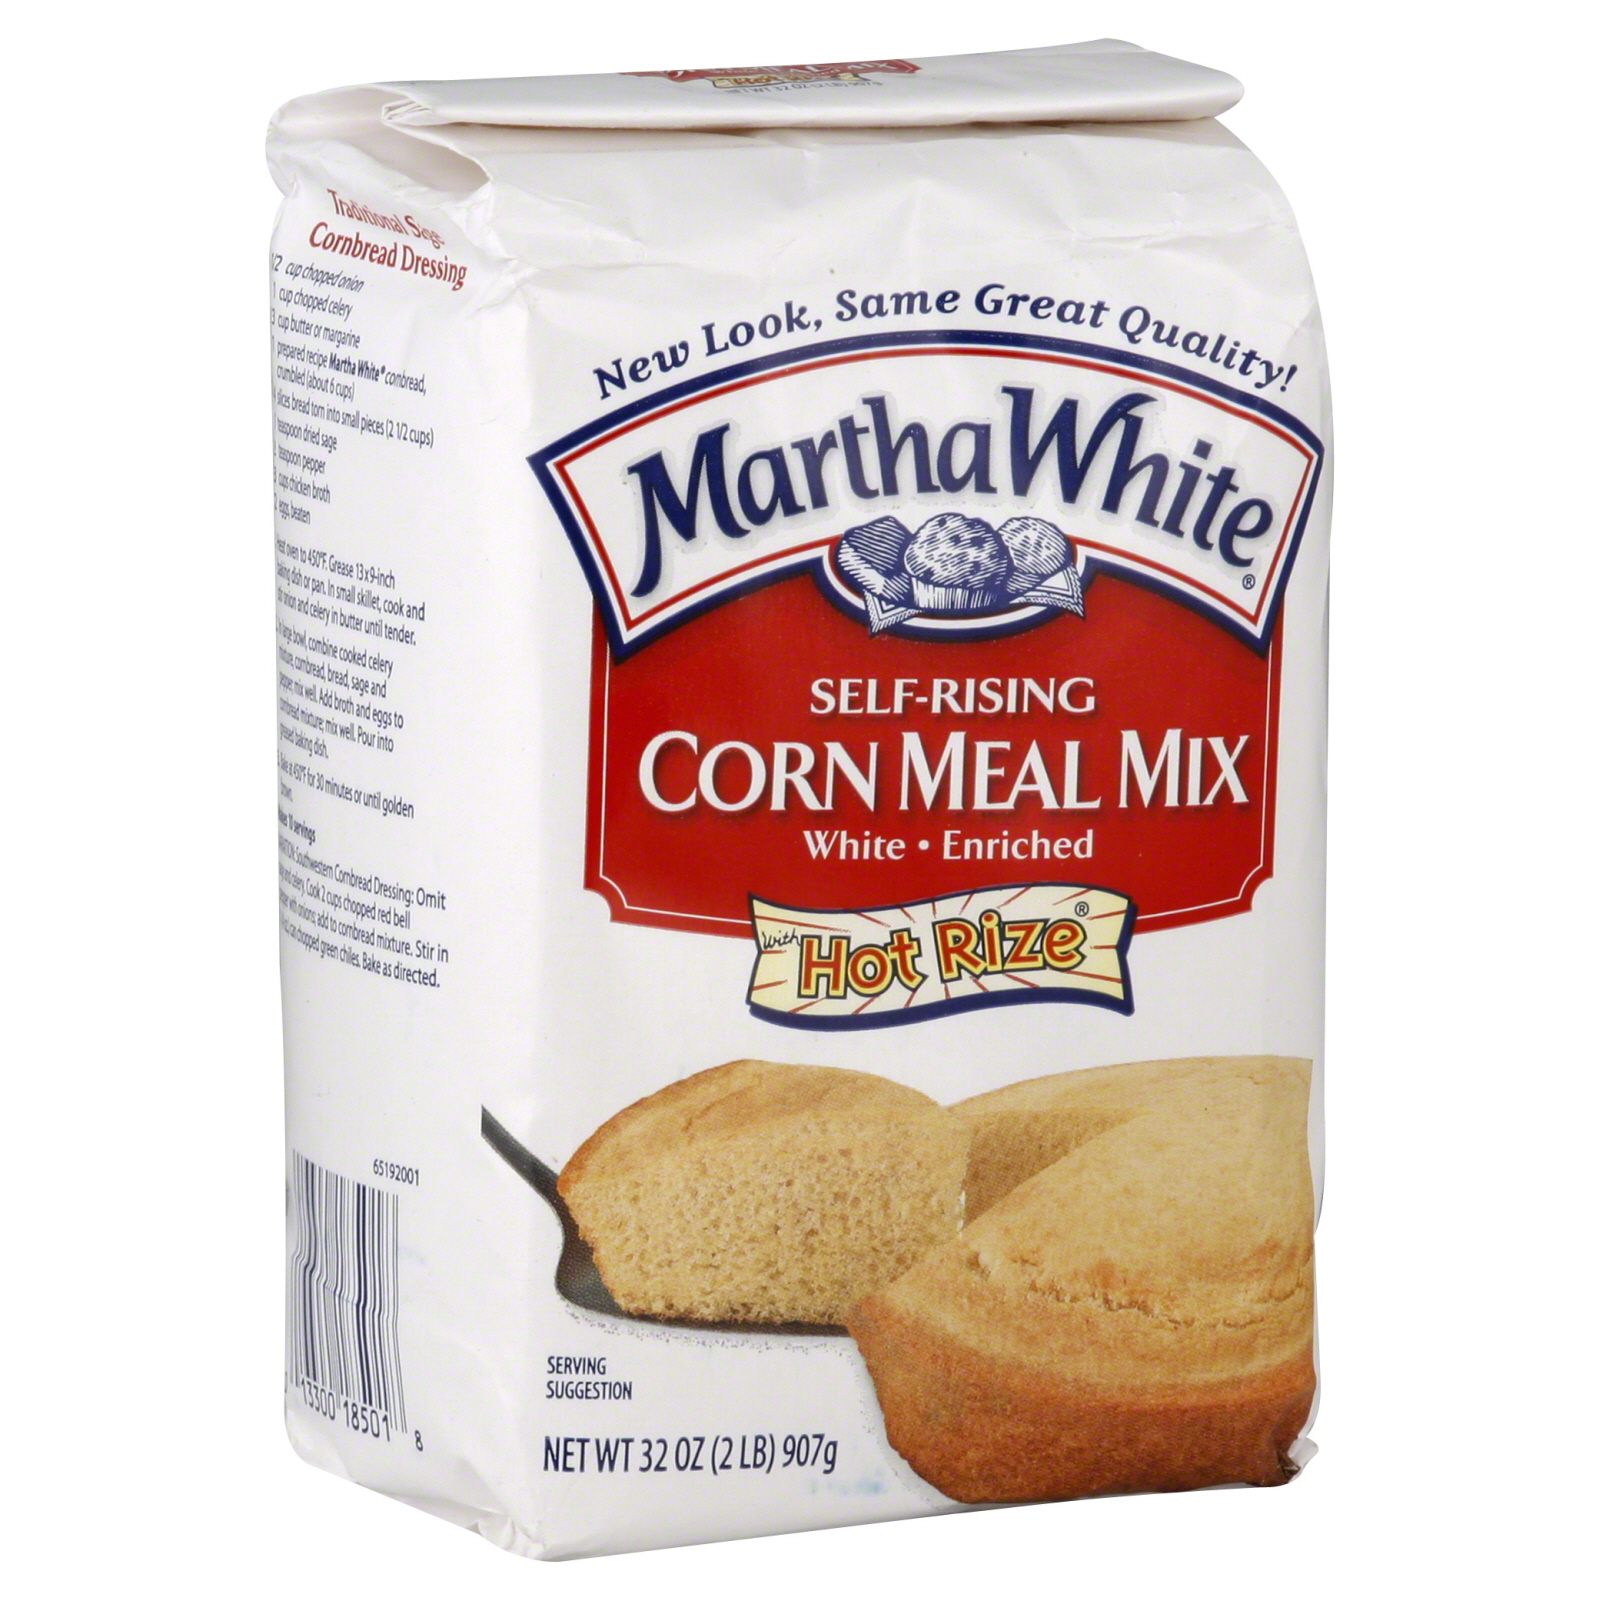 Martha White Corn Meal Mix, Self-Rising, Hot Rize, White, 32 oz (2 lb) 907 g